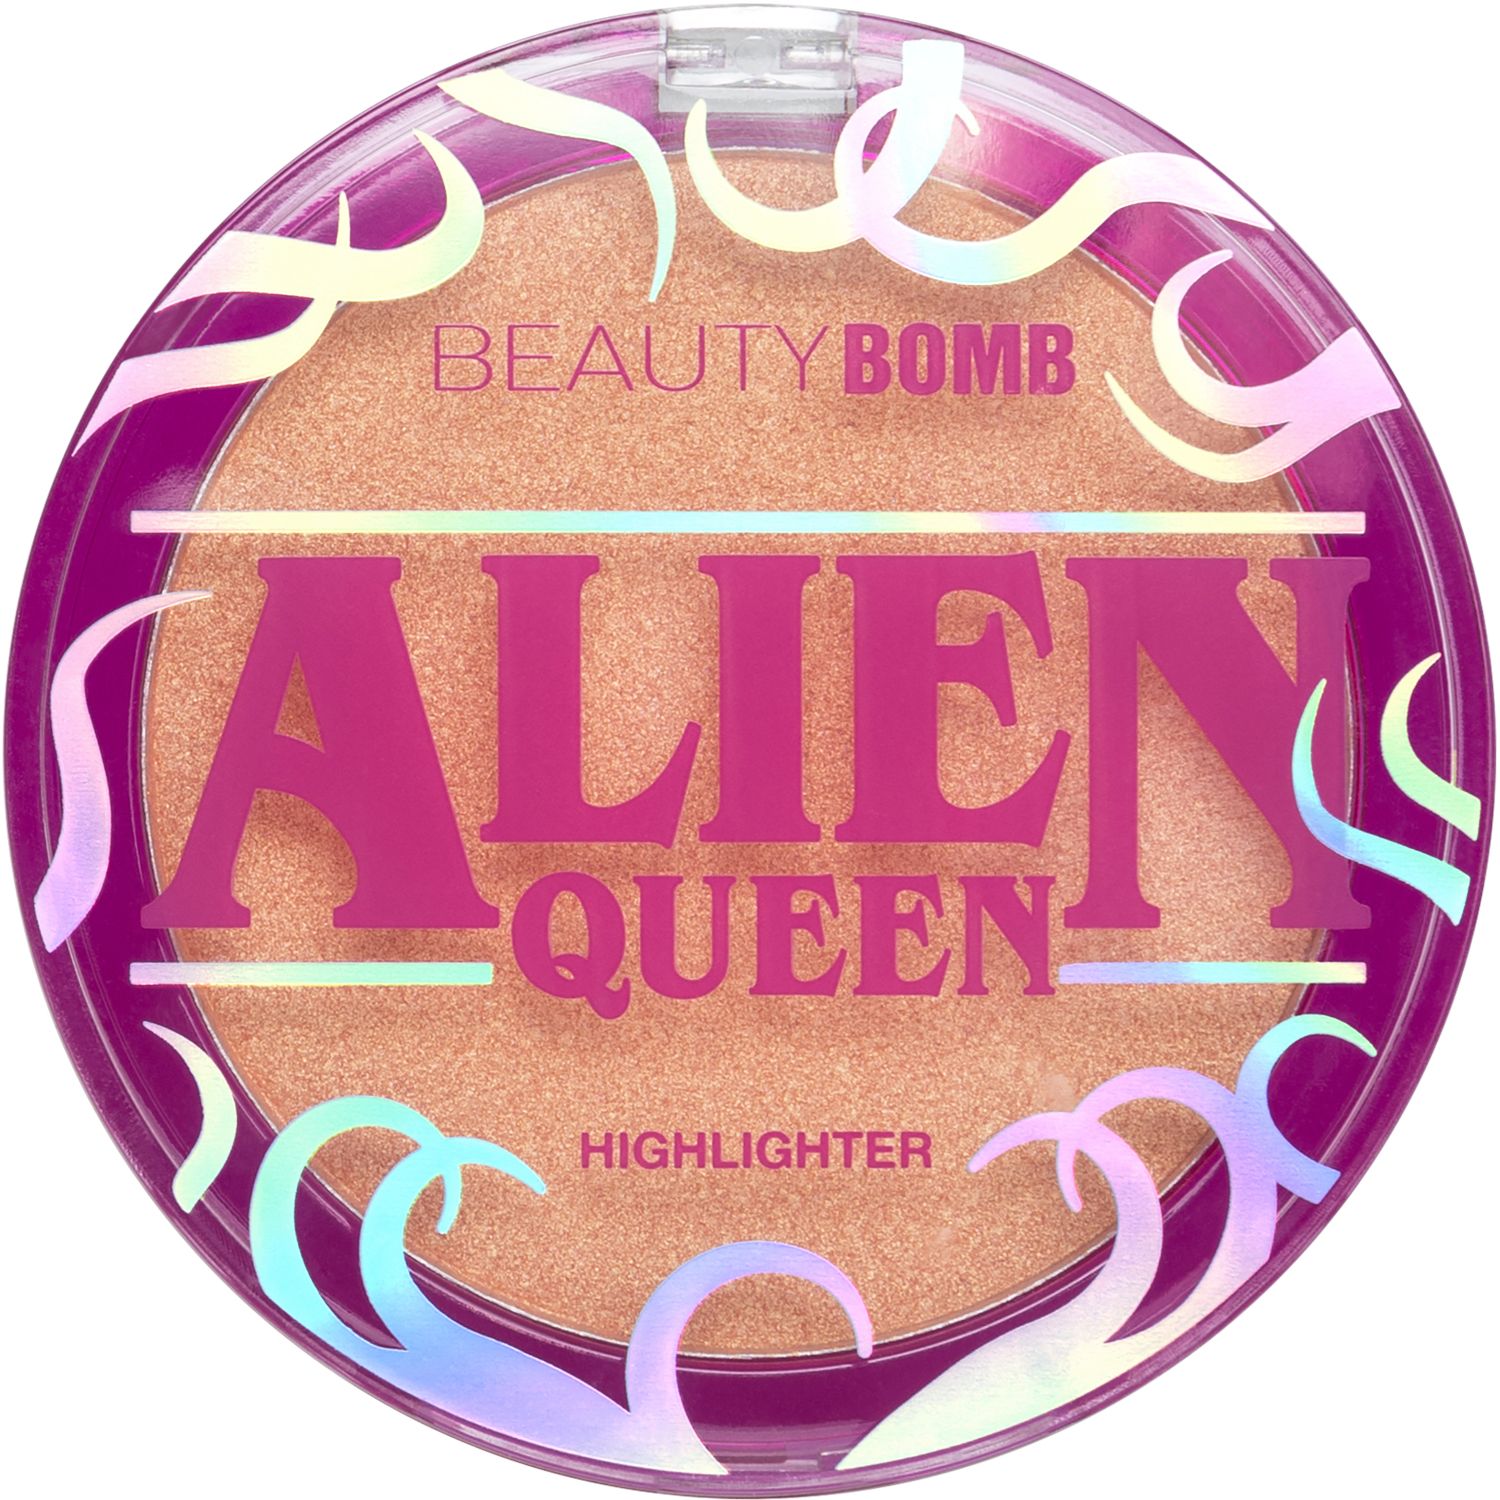 Хайлайтер Beauty Bomb Alien Queen  с золотистым сиянием, персиковый, №01, 6 г запечённый хайлайтер для космического сияния оттенок bronze queen 5389457